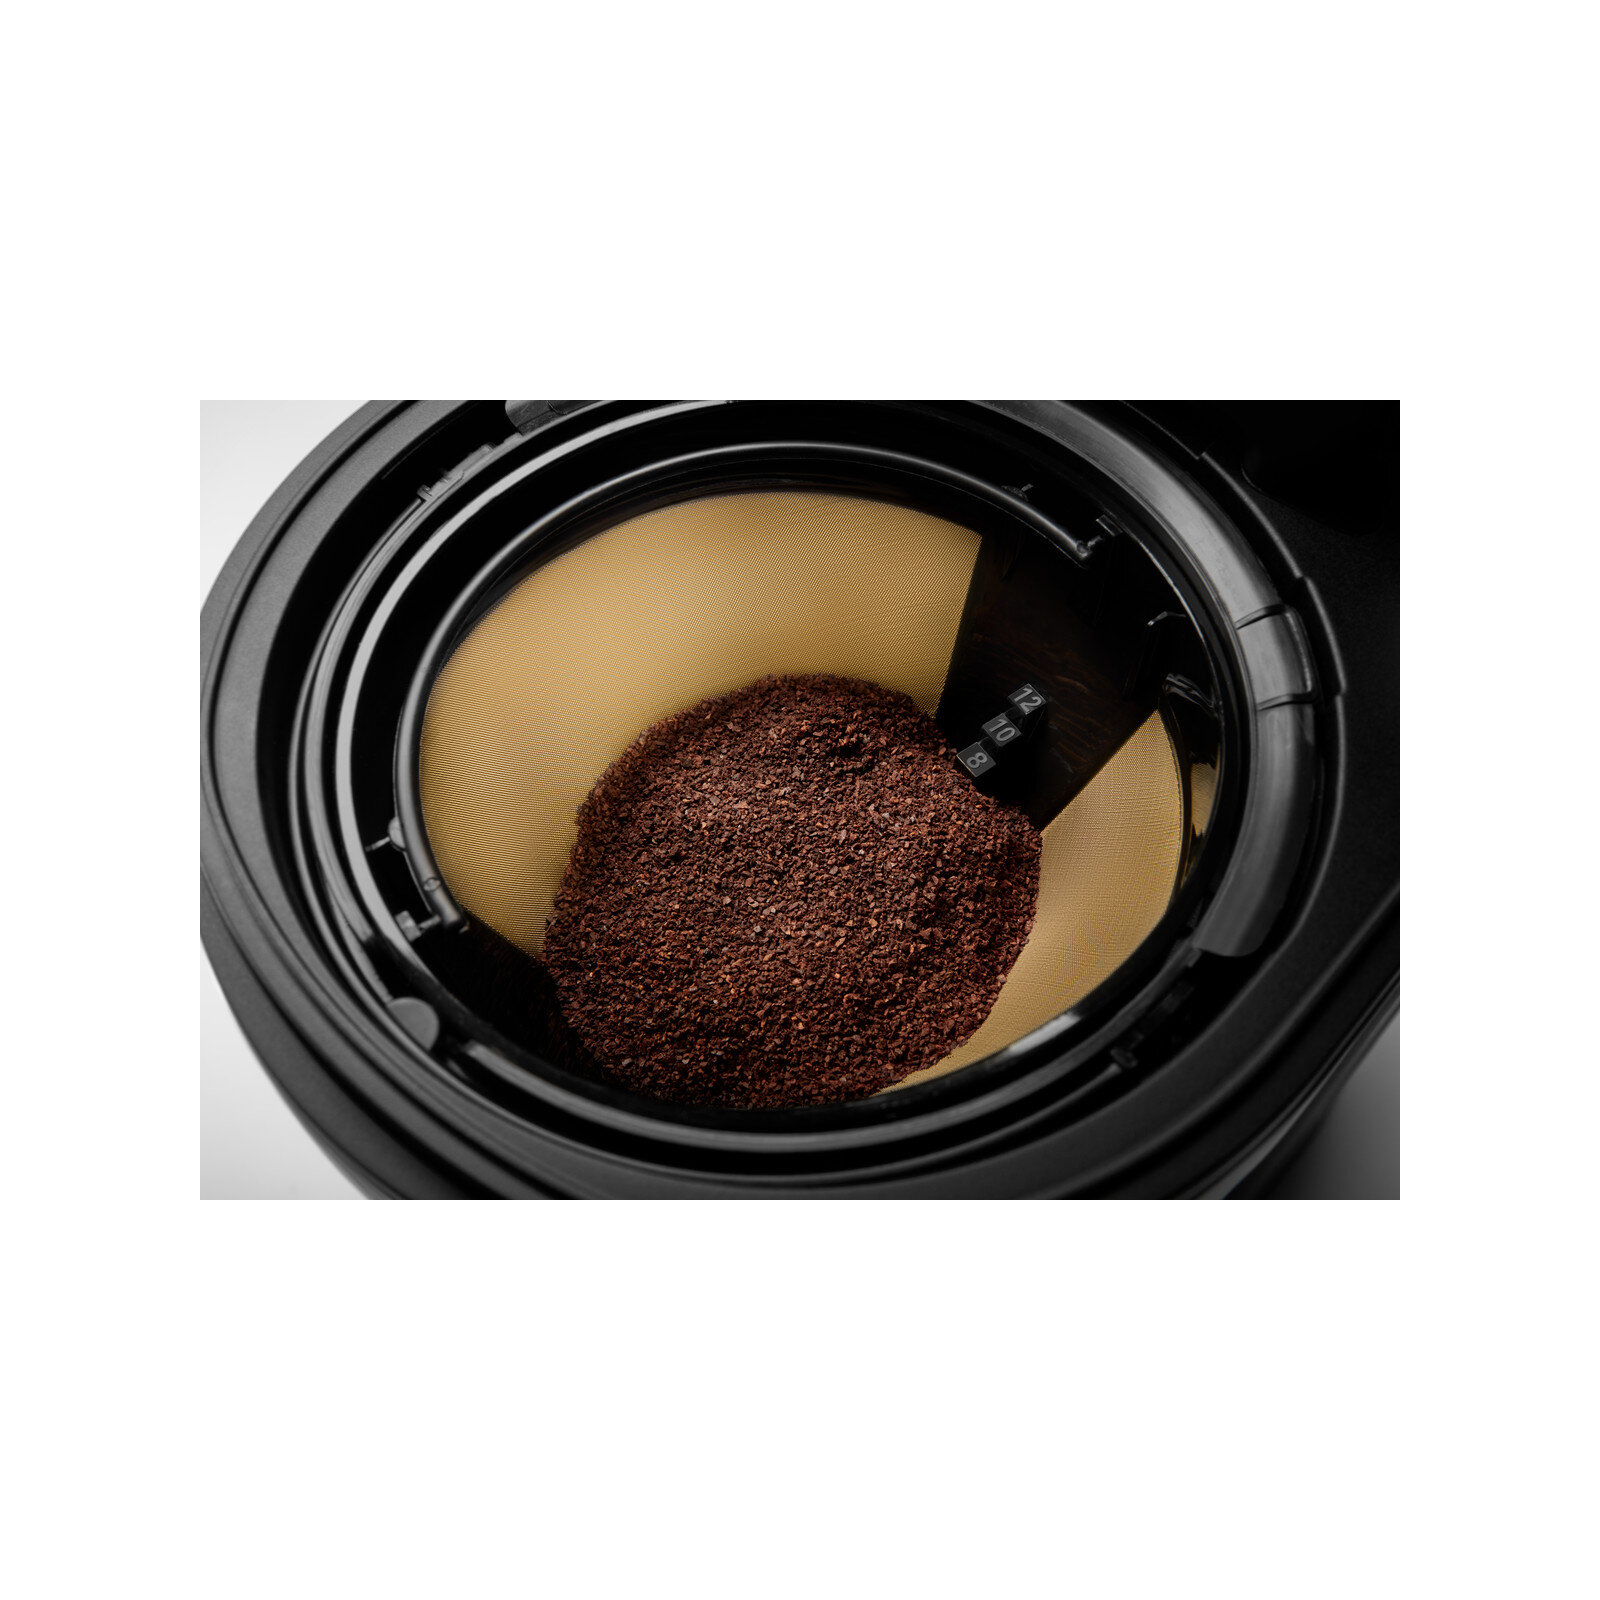 Крапельна кавоварка KitchenAid 5KCM1208EWH зображення 6